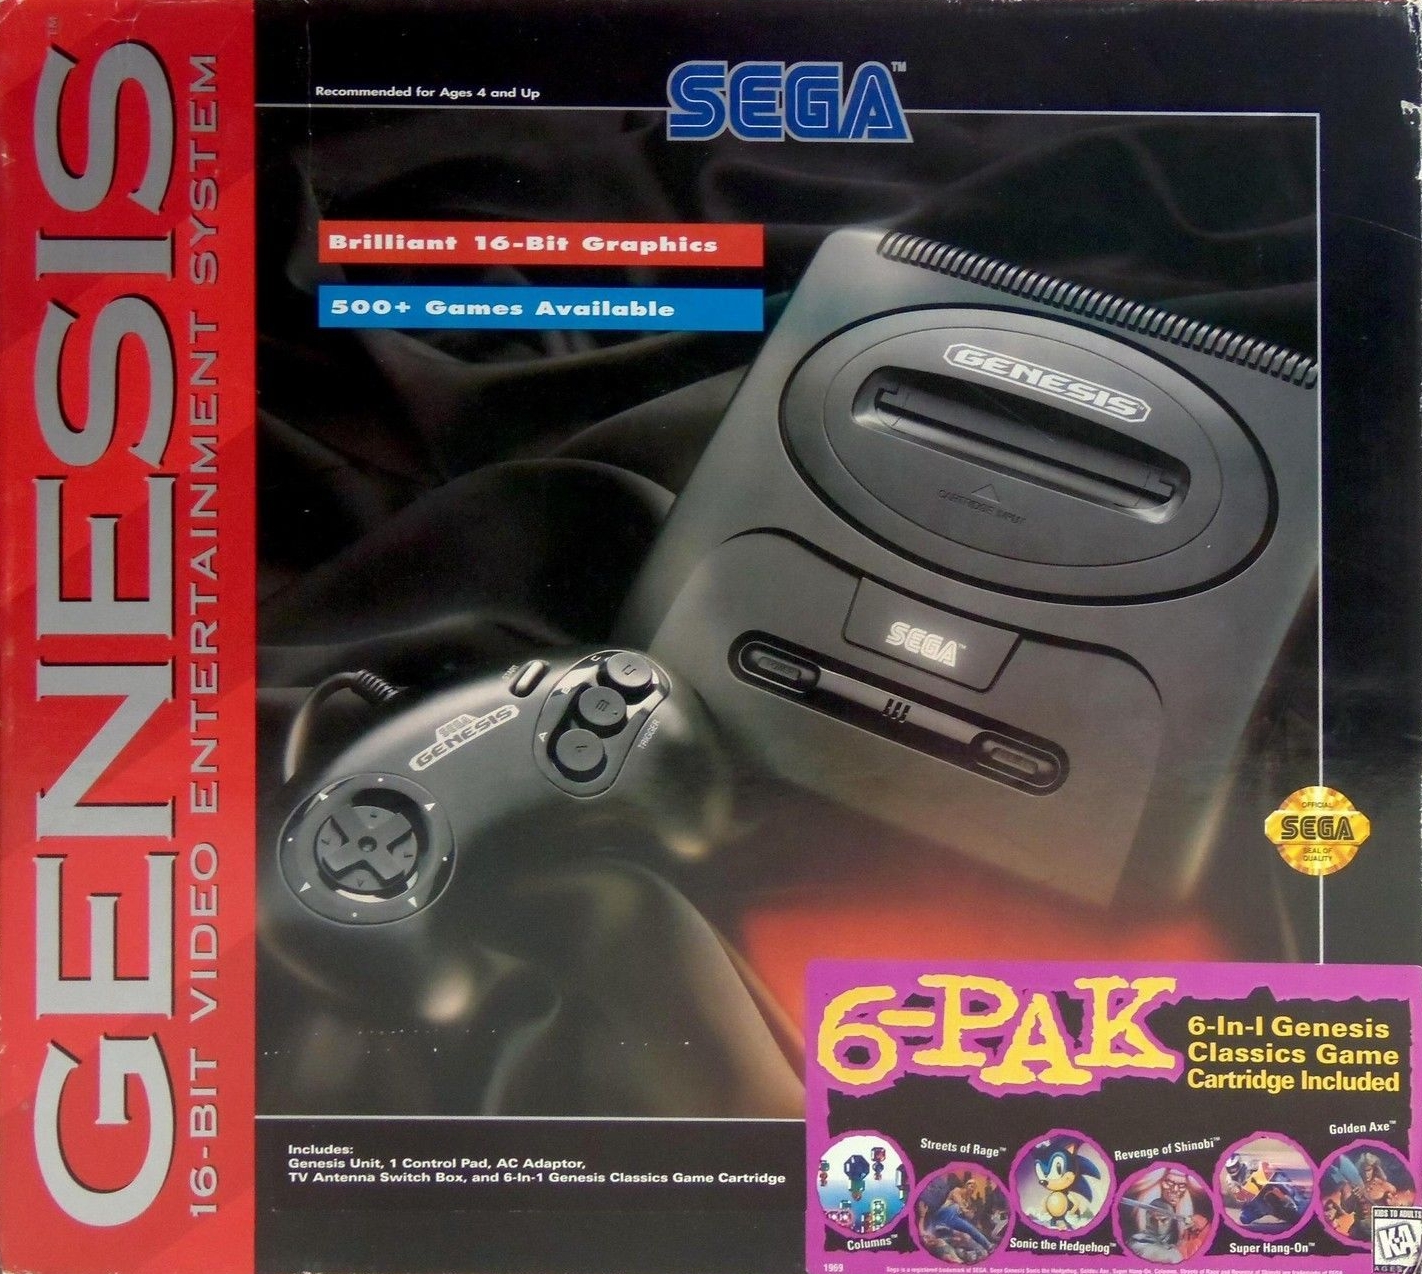 Sega mega drive and genesis classics steam обзор фото 78